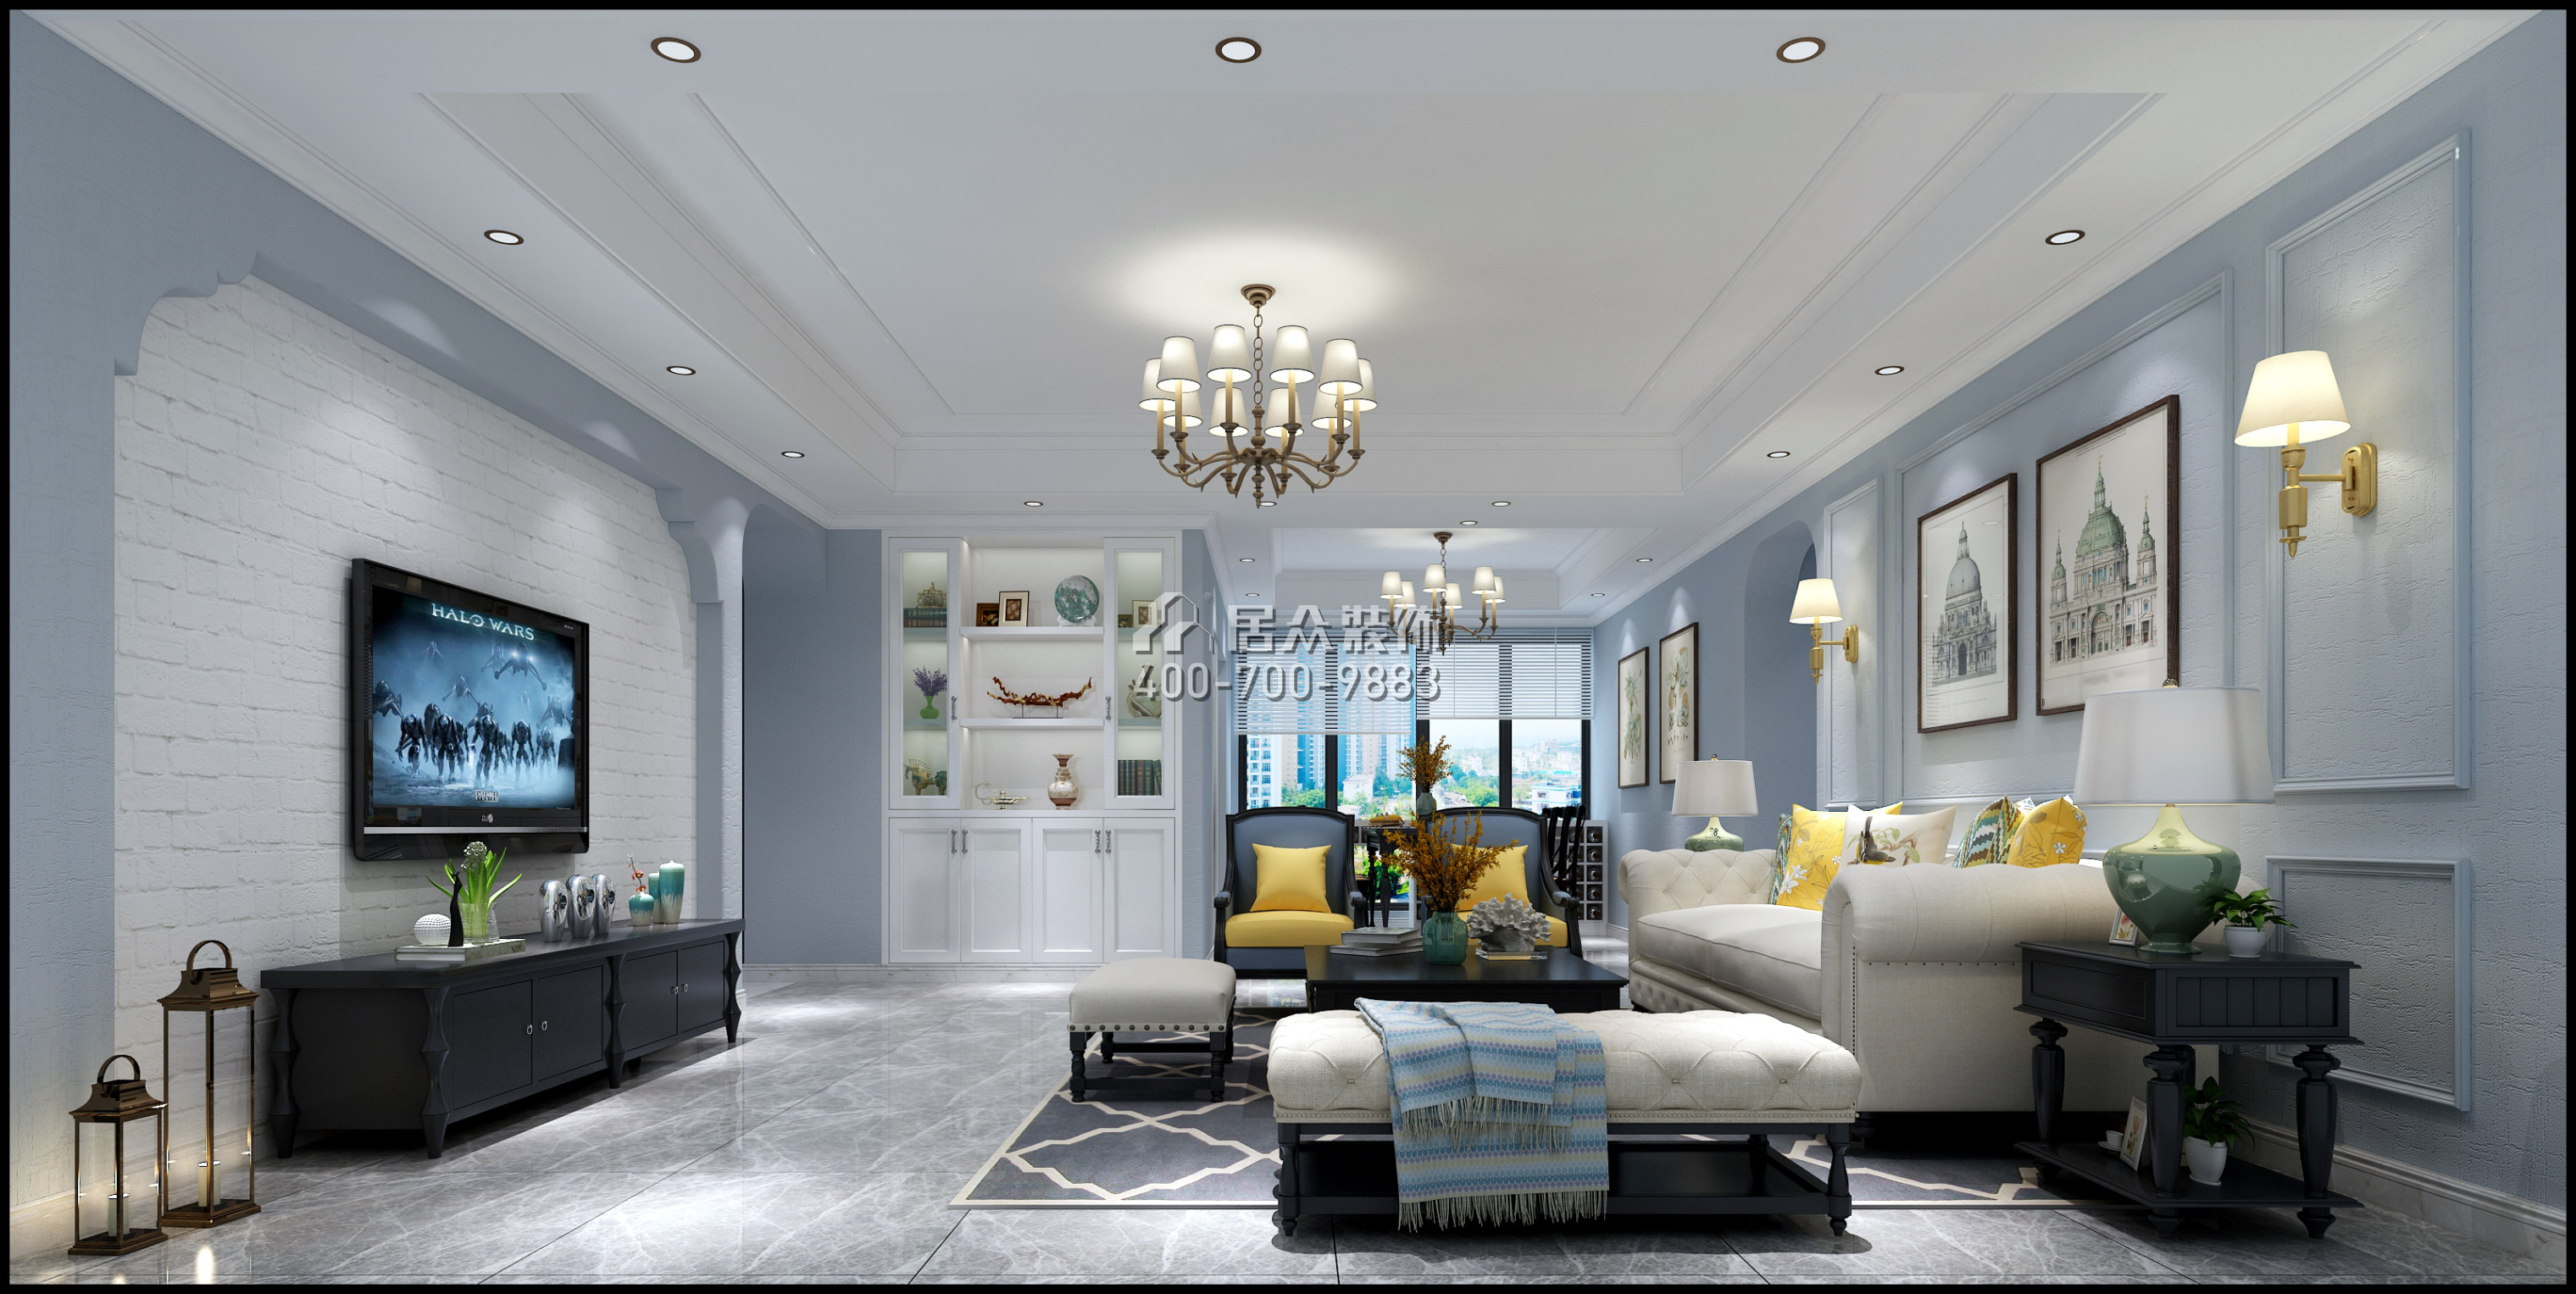 仁山智水花園一期157平方米美式風格平層戶型客廳裝修效果圖